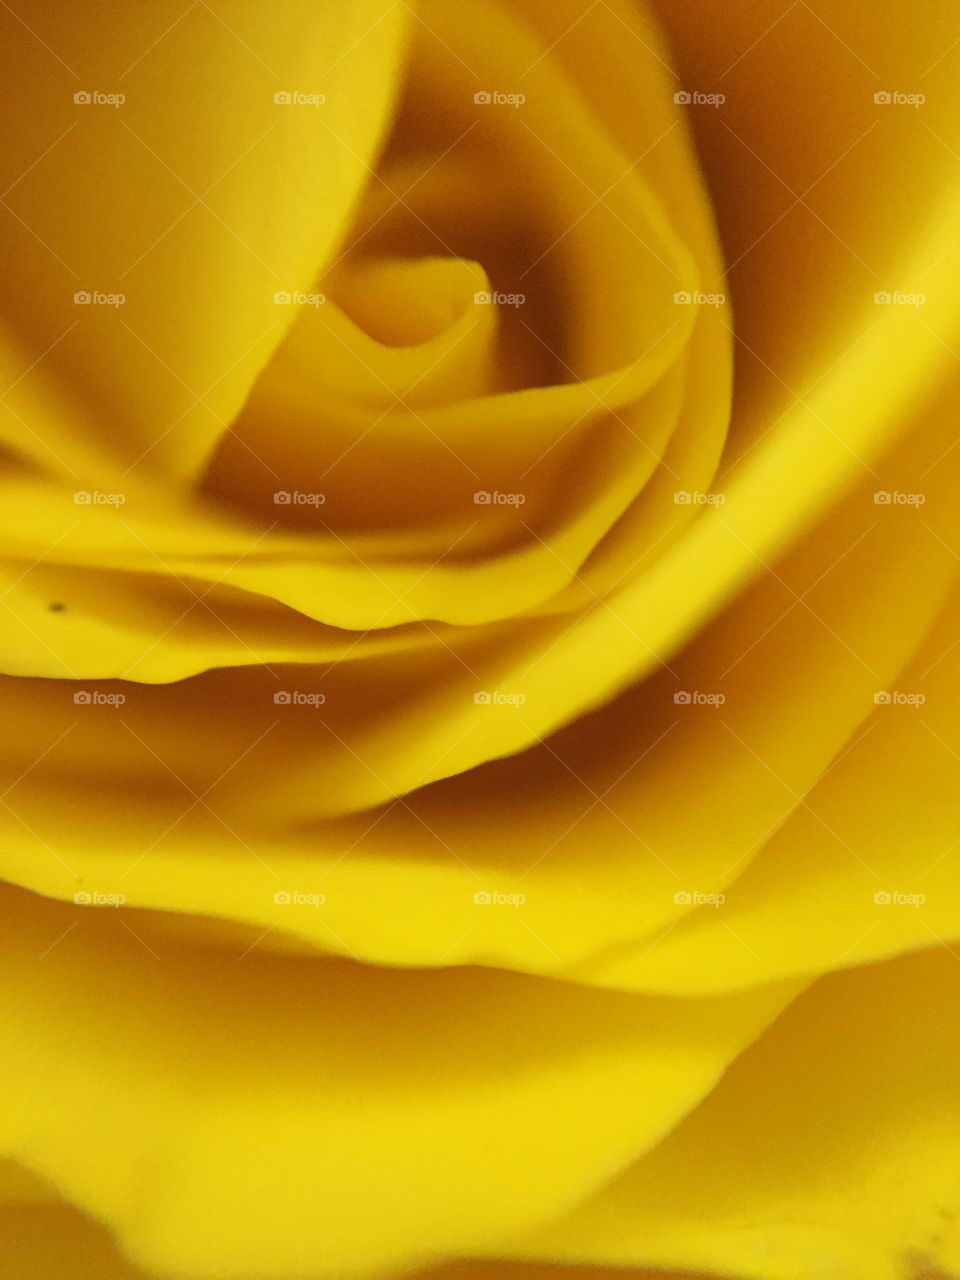 Yellow Rose Close Up 